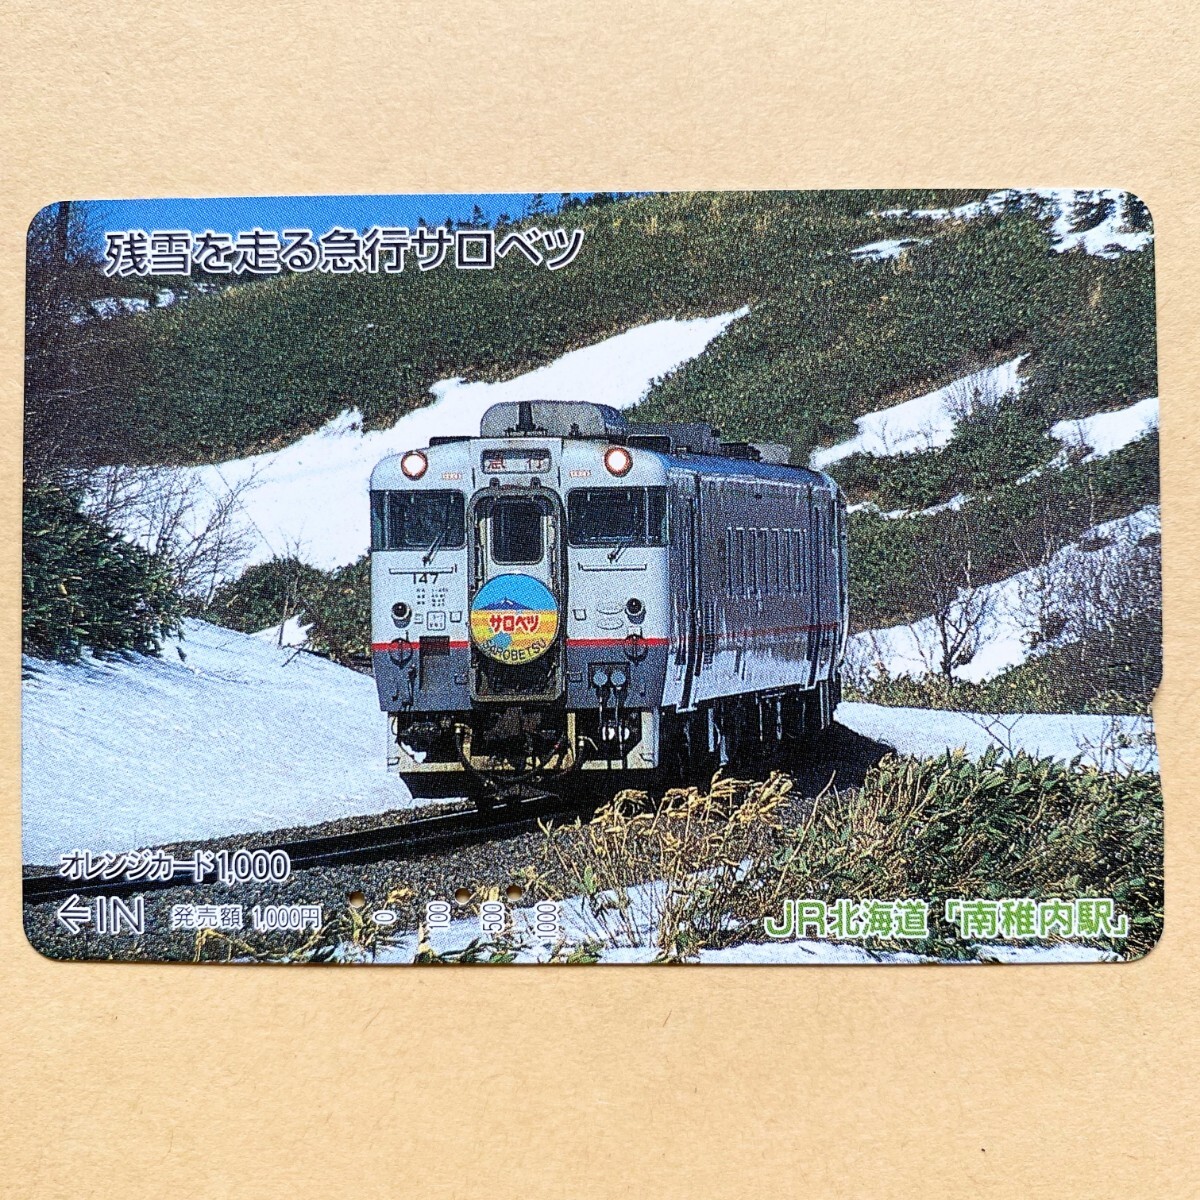 【使用済】 オレンジカード JR北海道 残雪を走る急行サロベツ_画像1